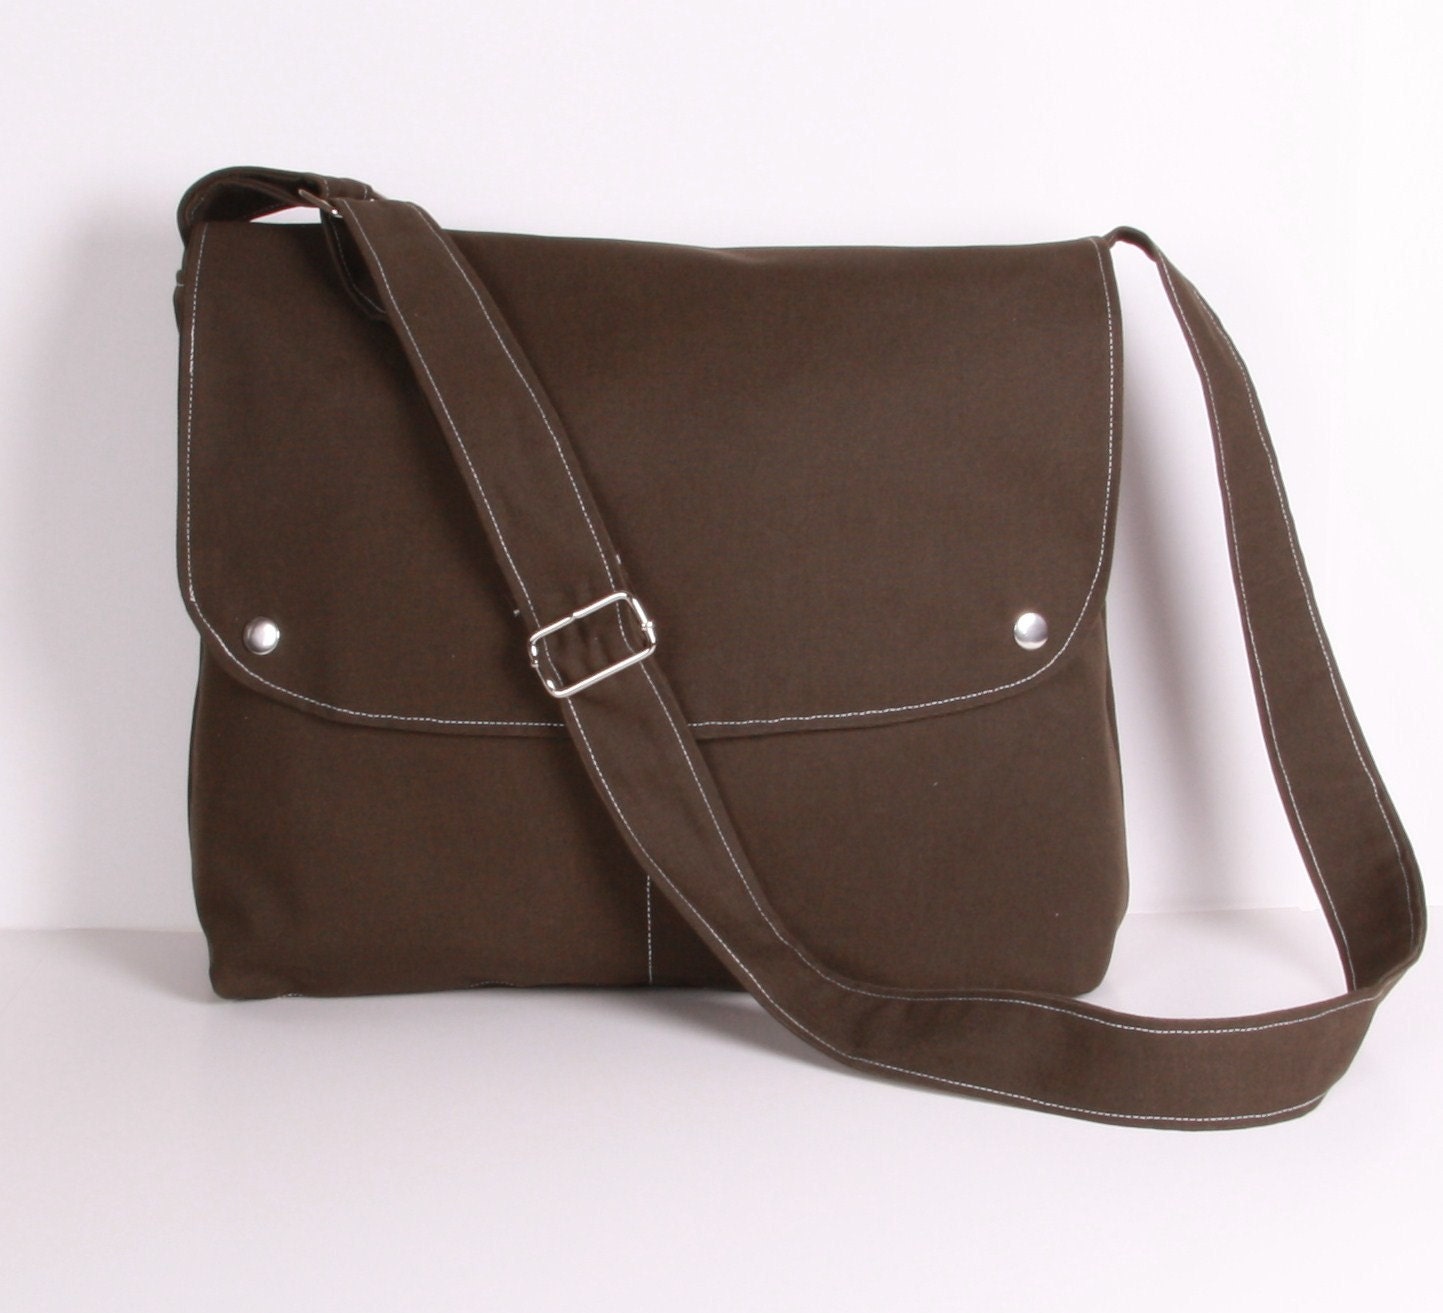 CITY.. Messenger Bag School bag Shoulder bag , Dark Olive Green canvas with Cream lining ,adjustable strap